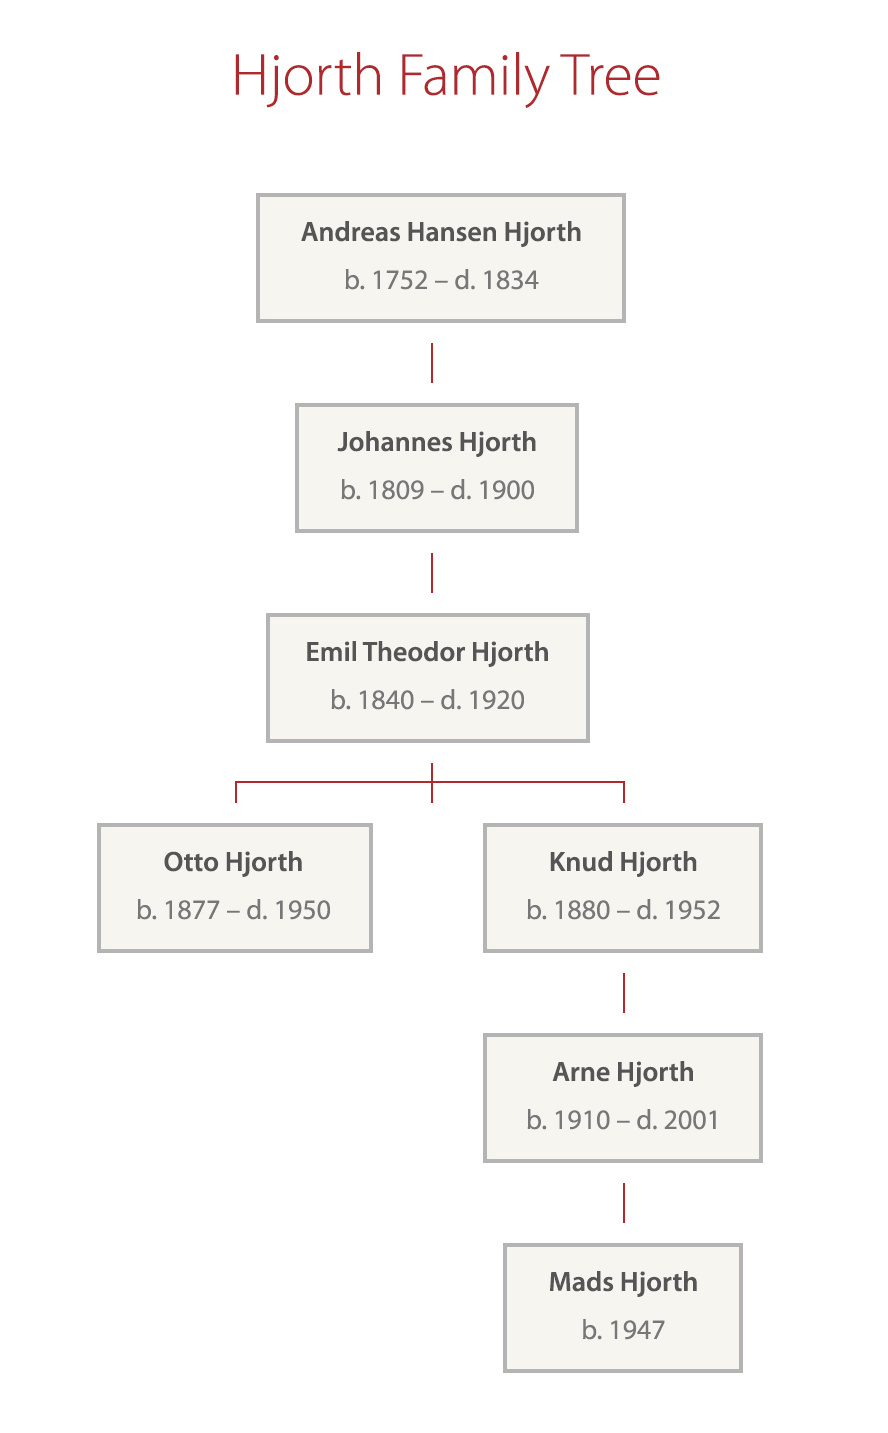 Hjorth family tree